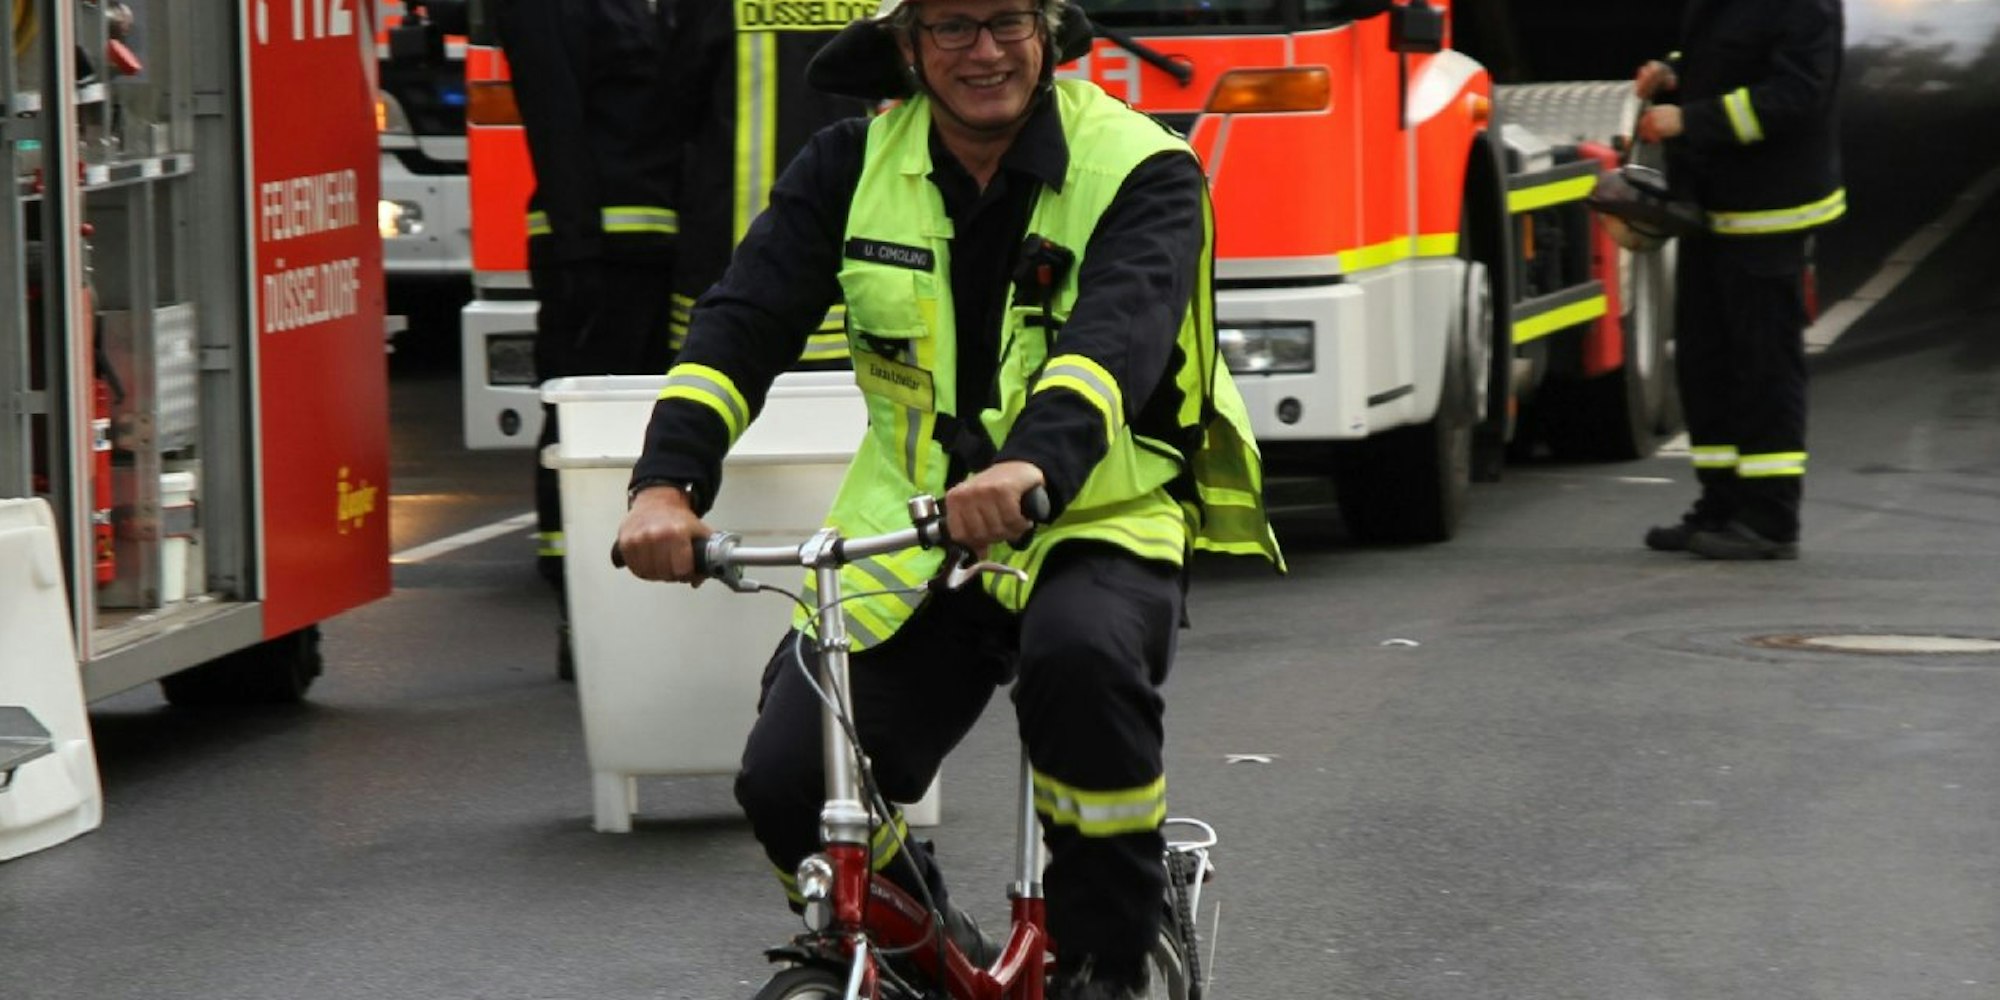 Immer voll im Einsatz: Ulrich Cimolino ist seit 1991 bei der Düsseldorfer Feuerwehr.